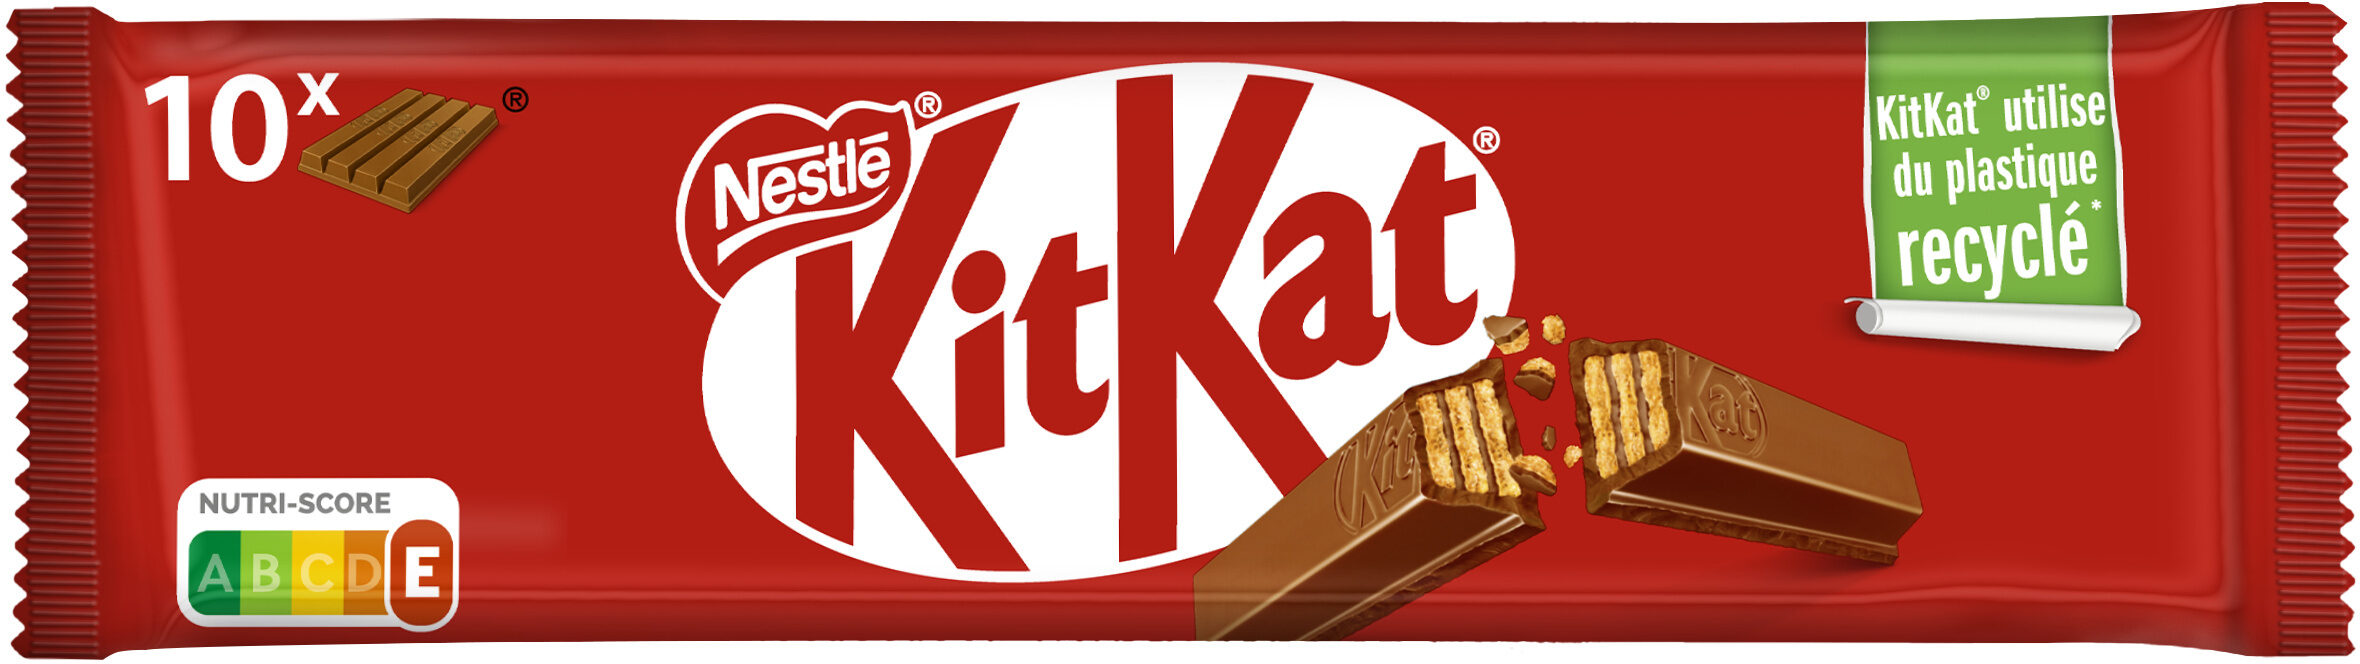 Kit Kat x10 - Produit